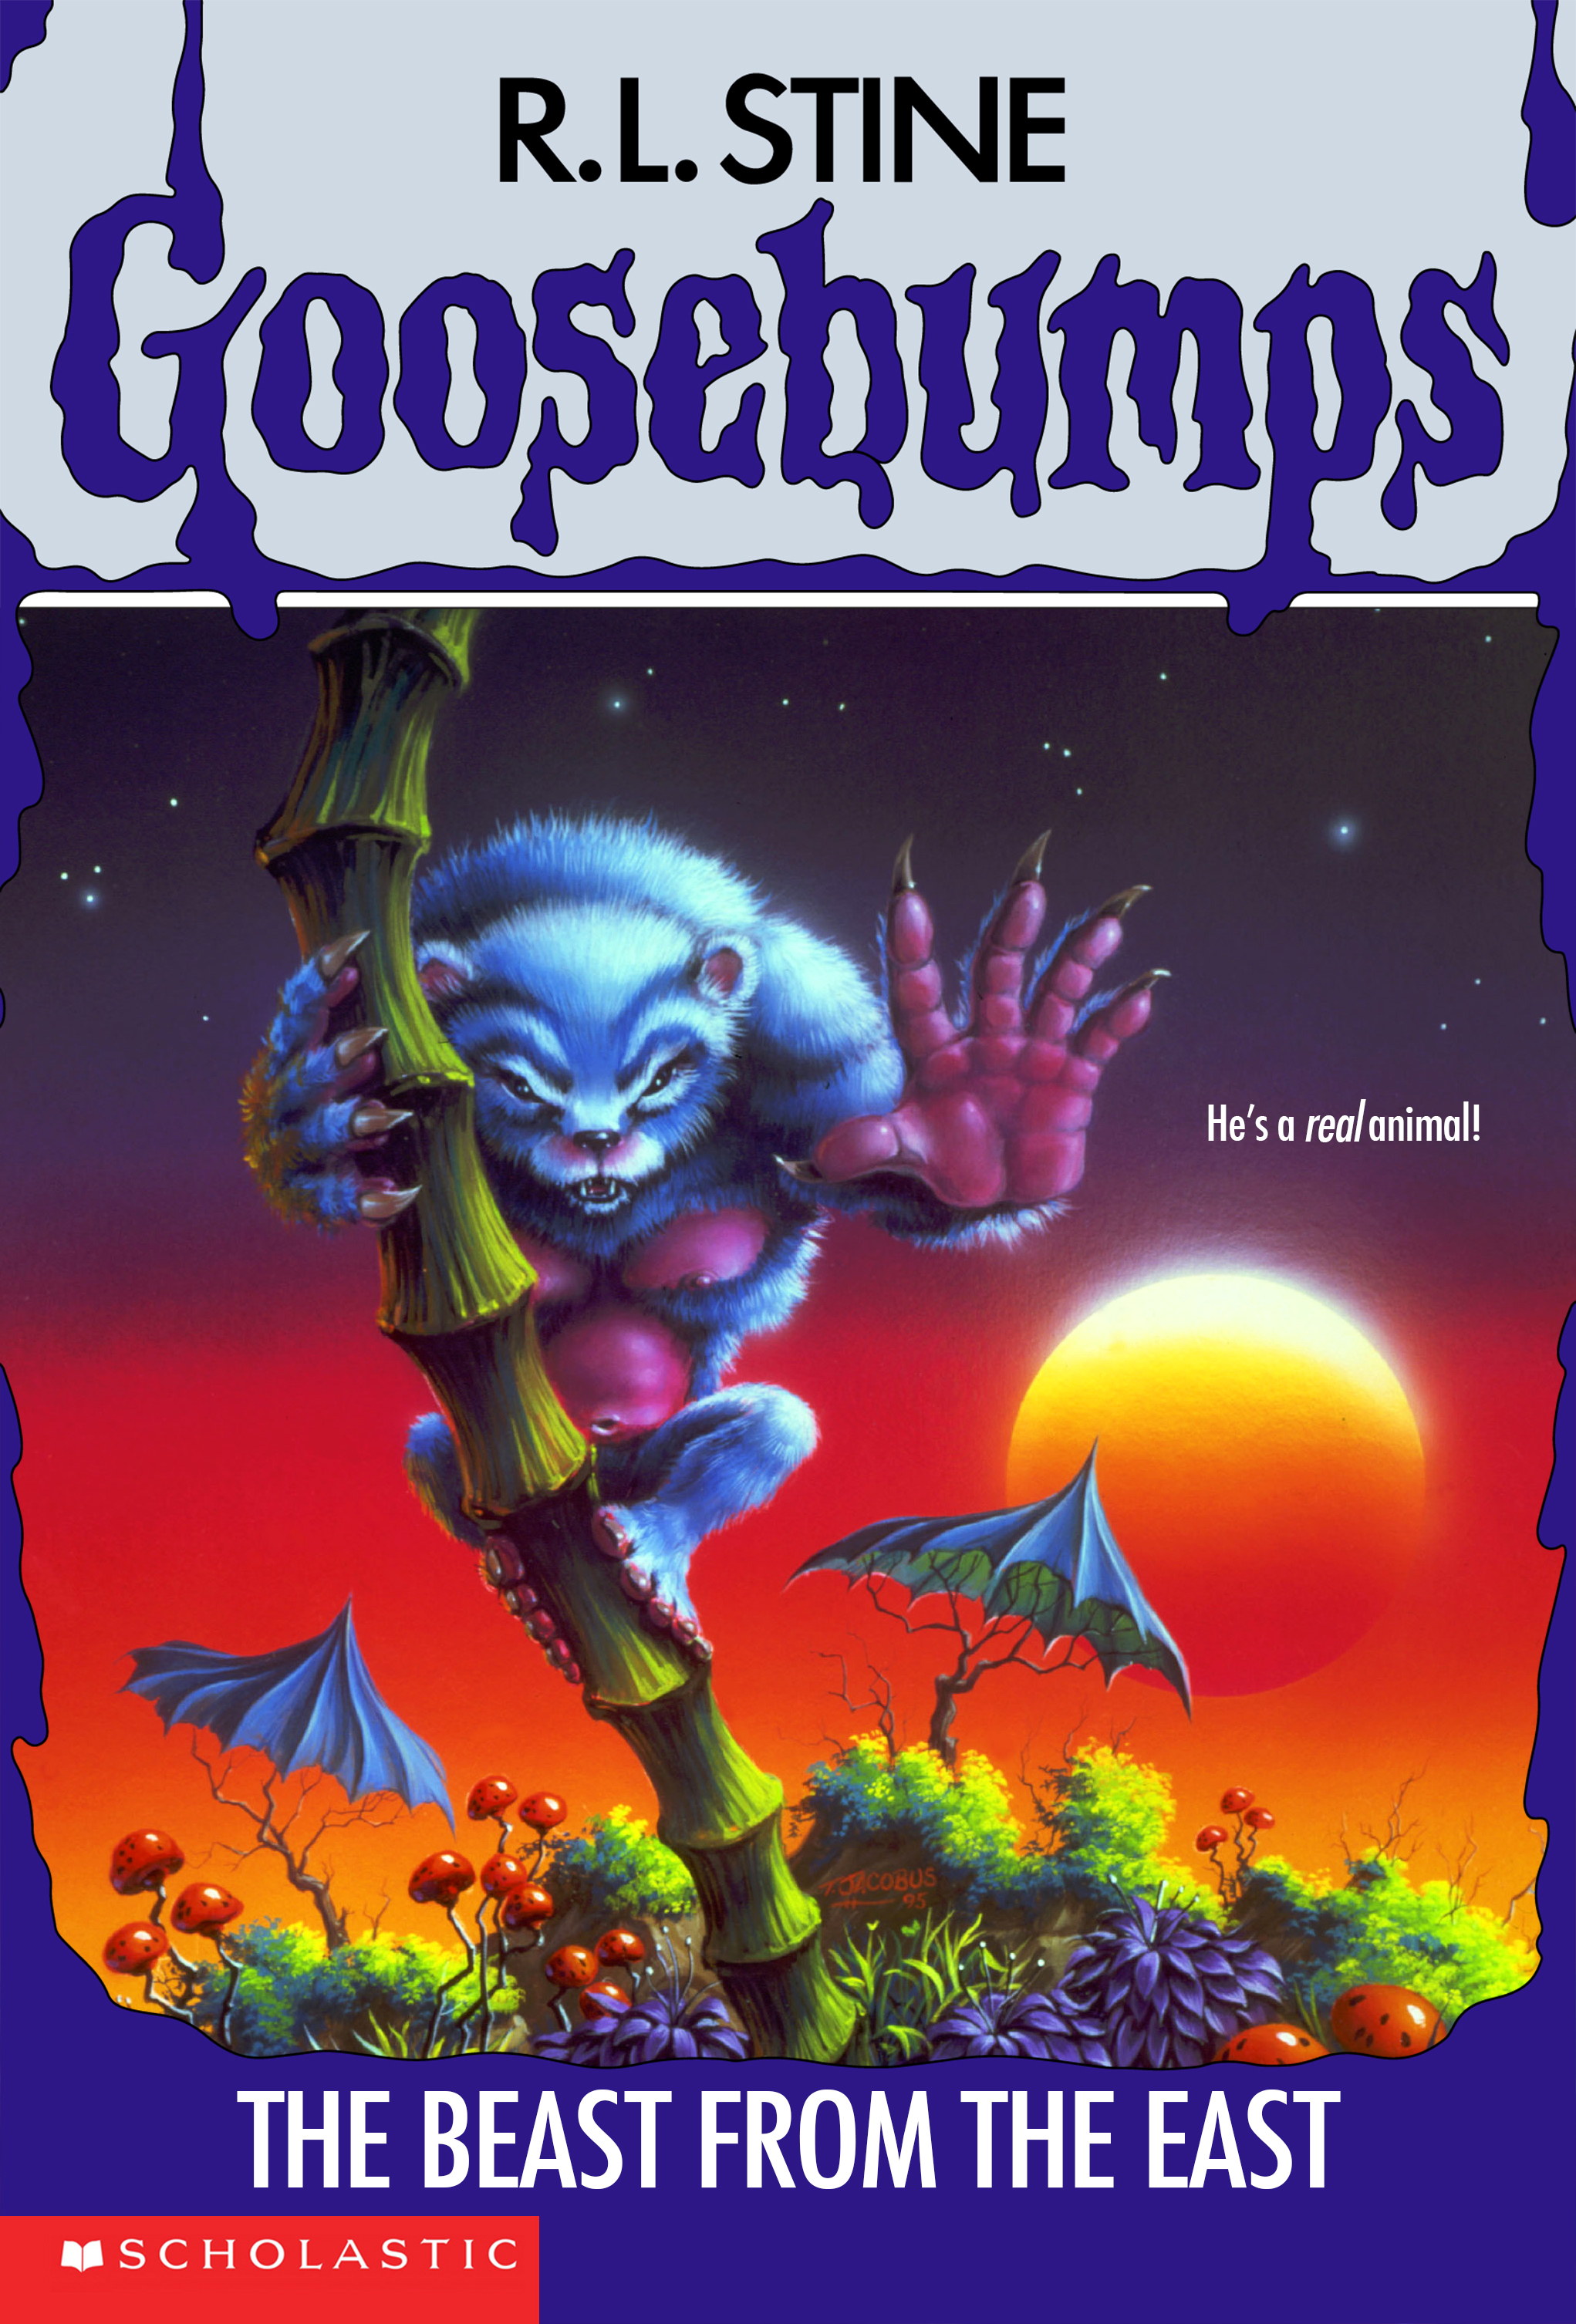 Goosebumps (filme) – Wikipédia, a enciclopédia livre